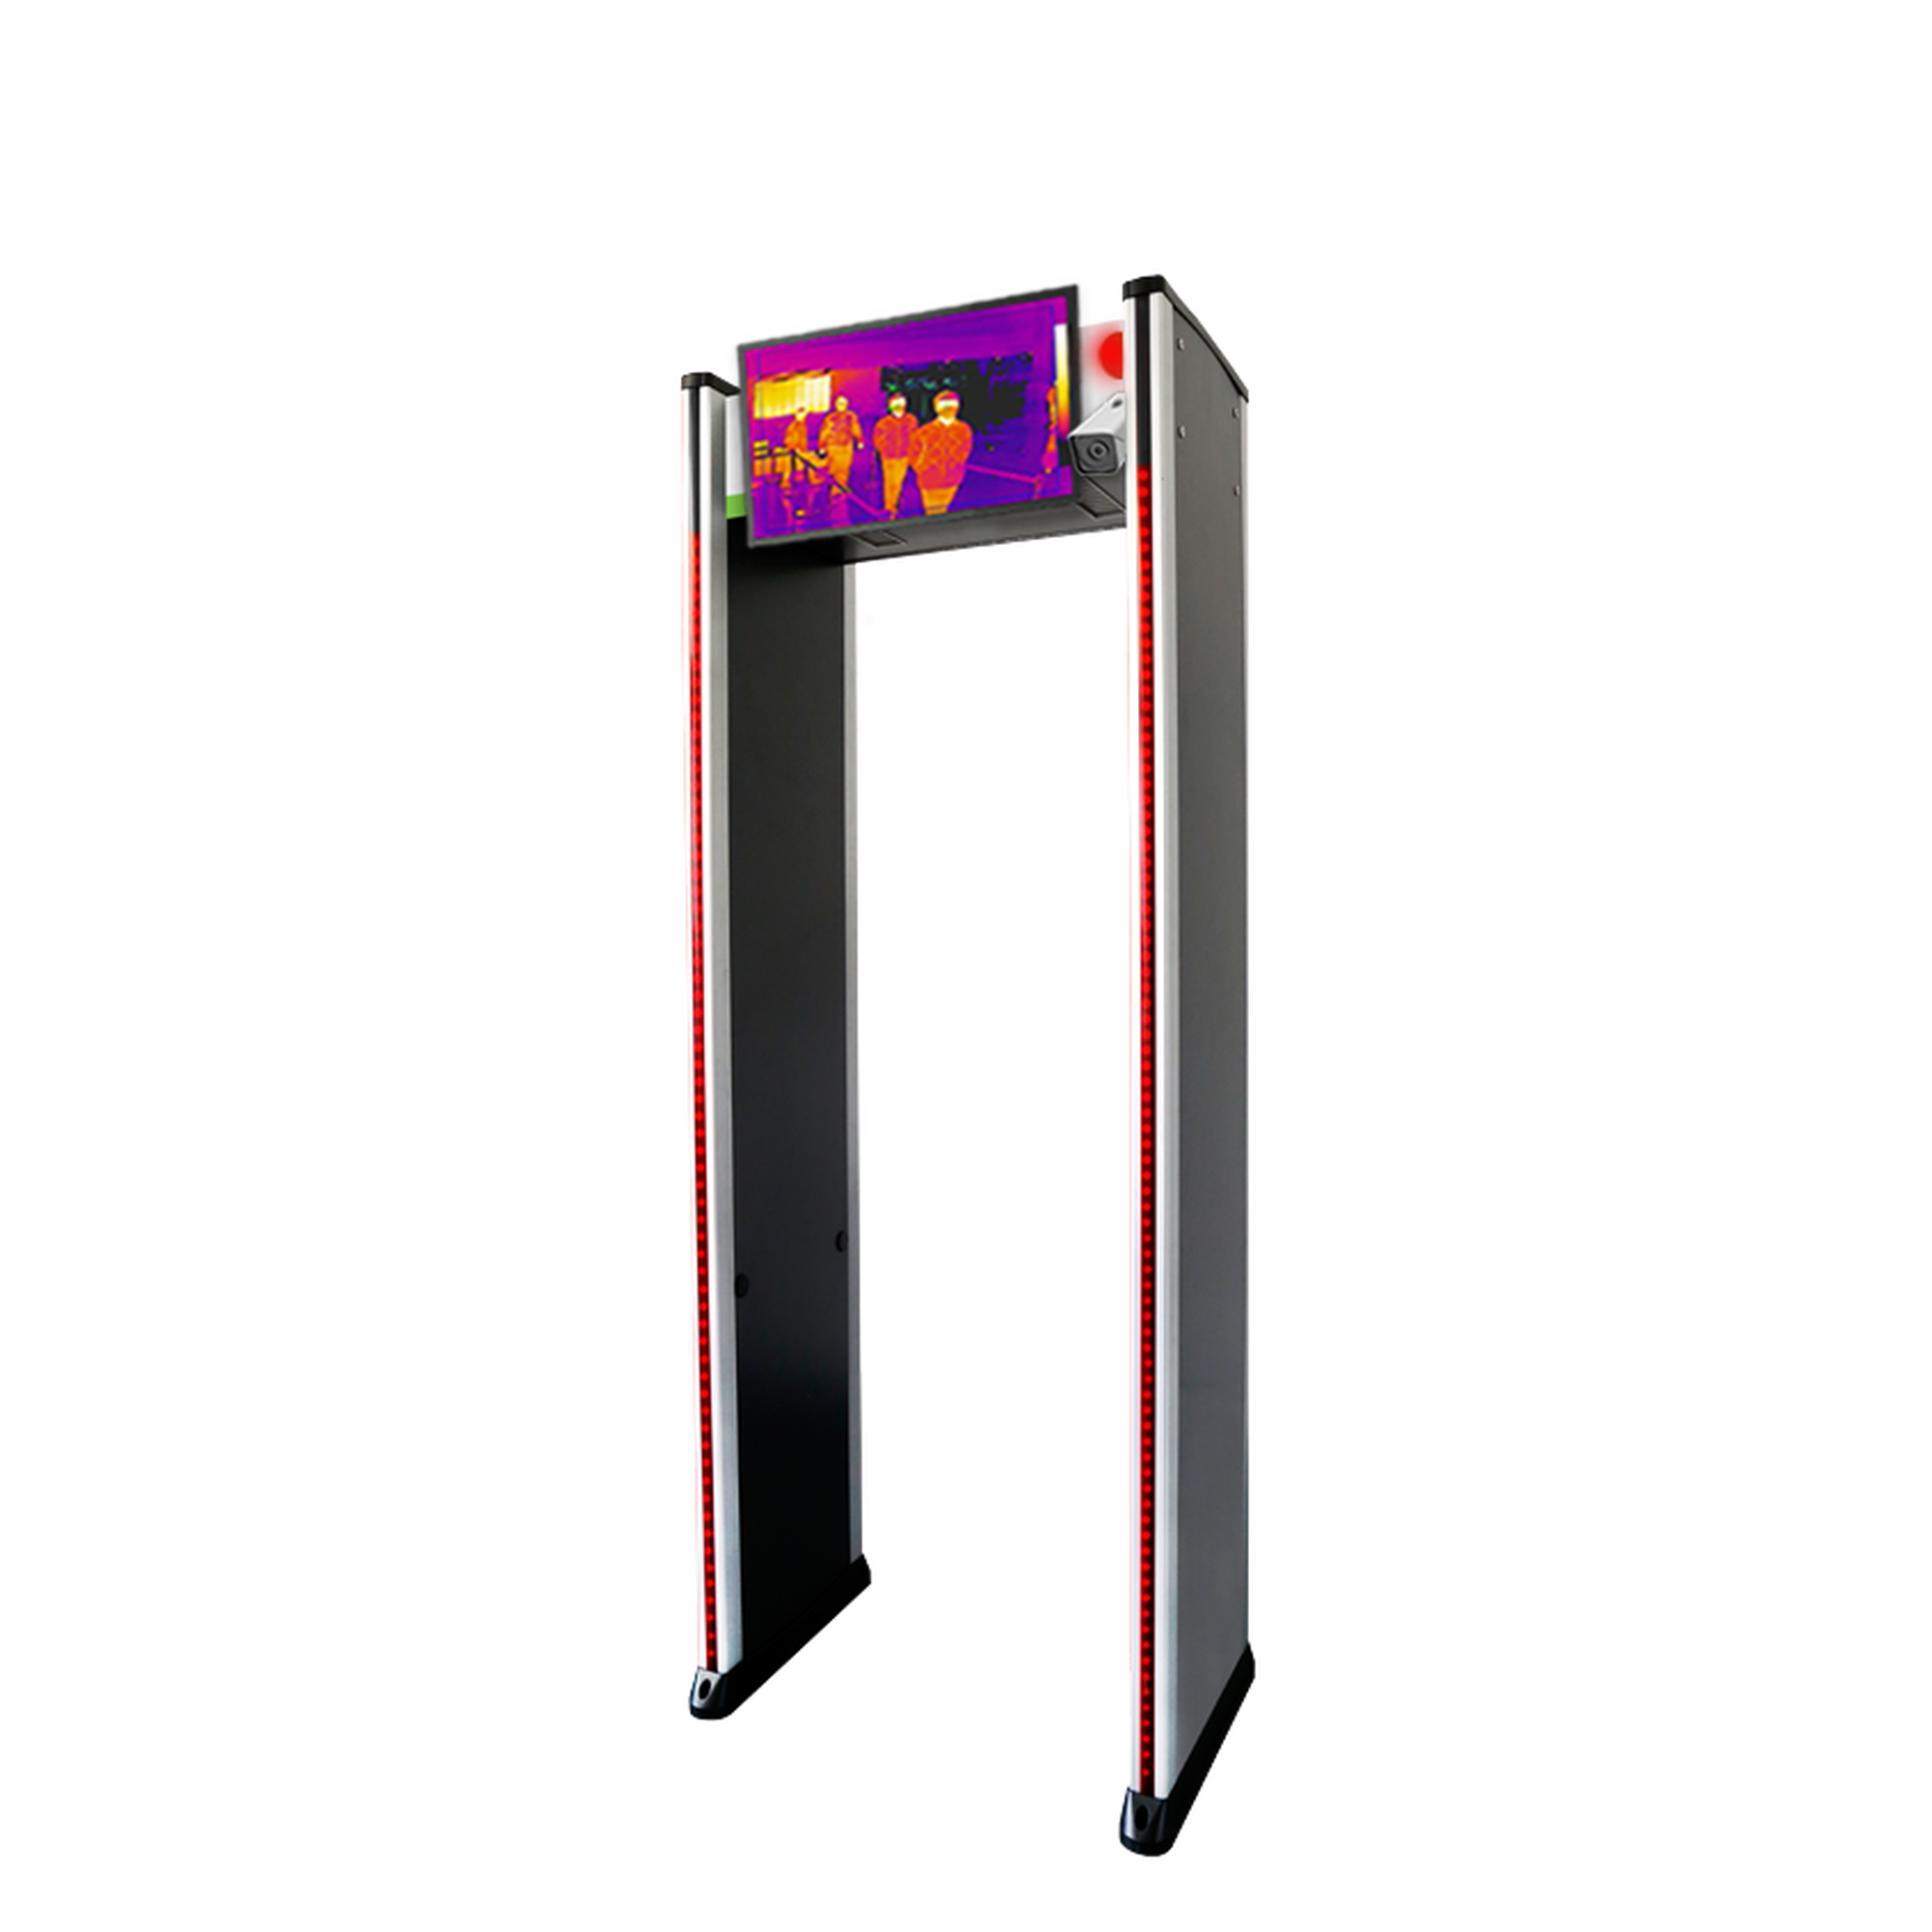 Arco Detector de Metal con Cámara termográfica y Display